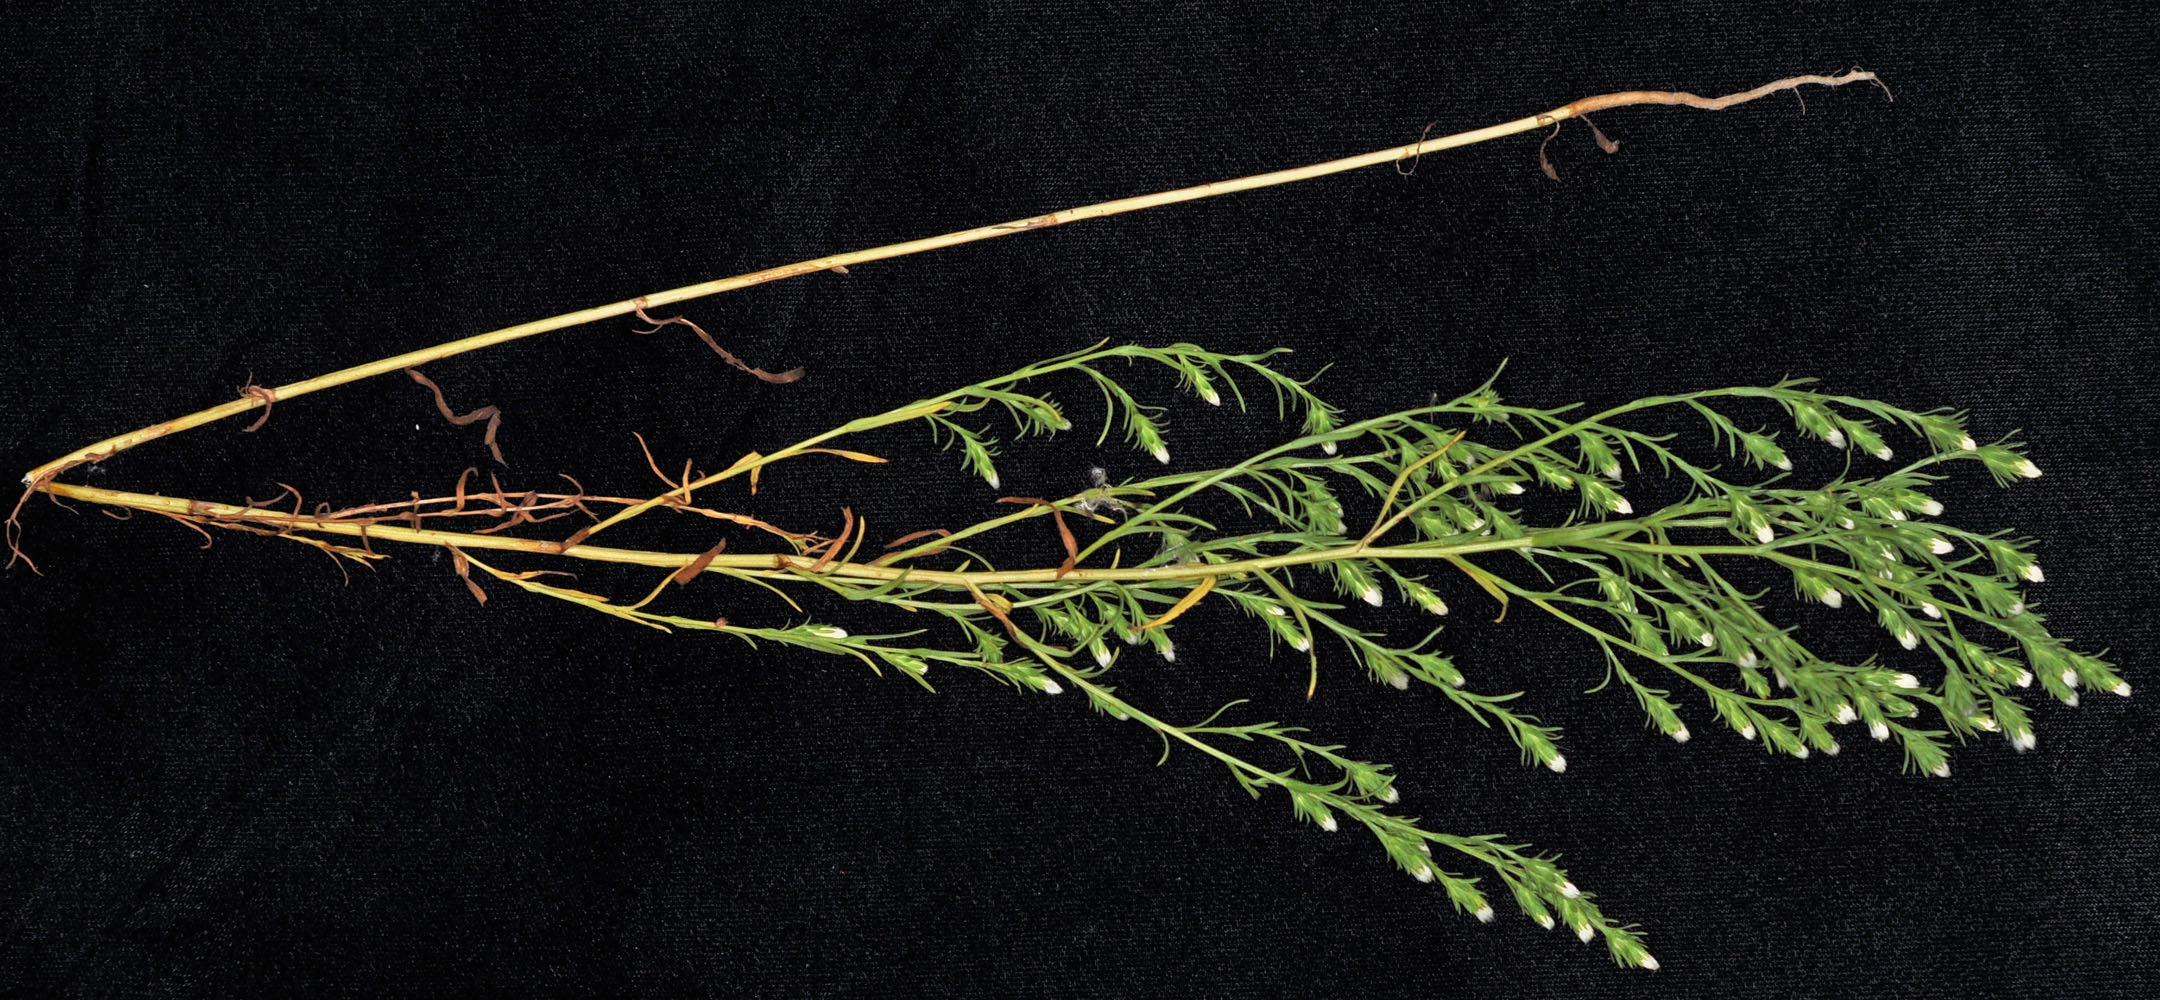 Flora of Eastern Washington Image: Symphyotrichum ciliatum